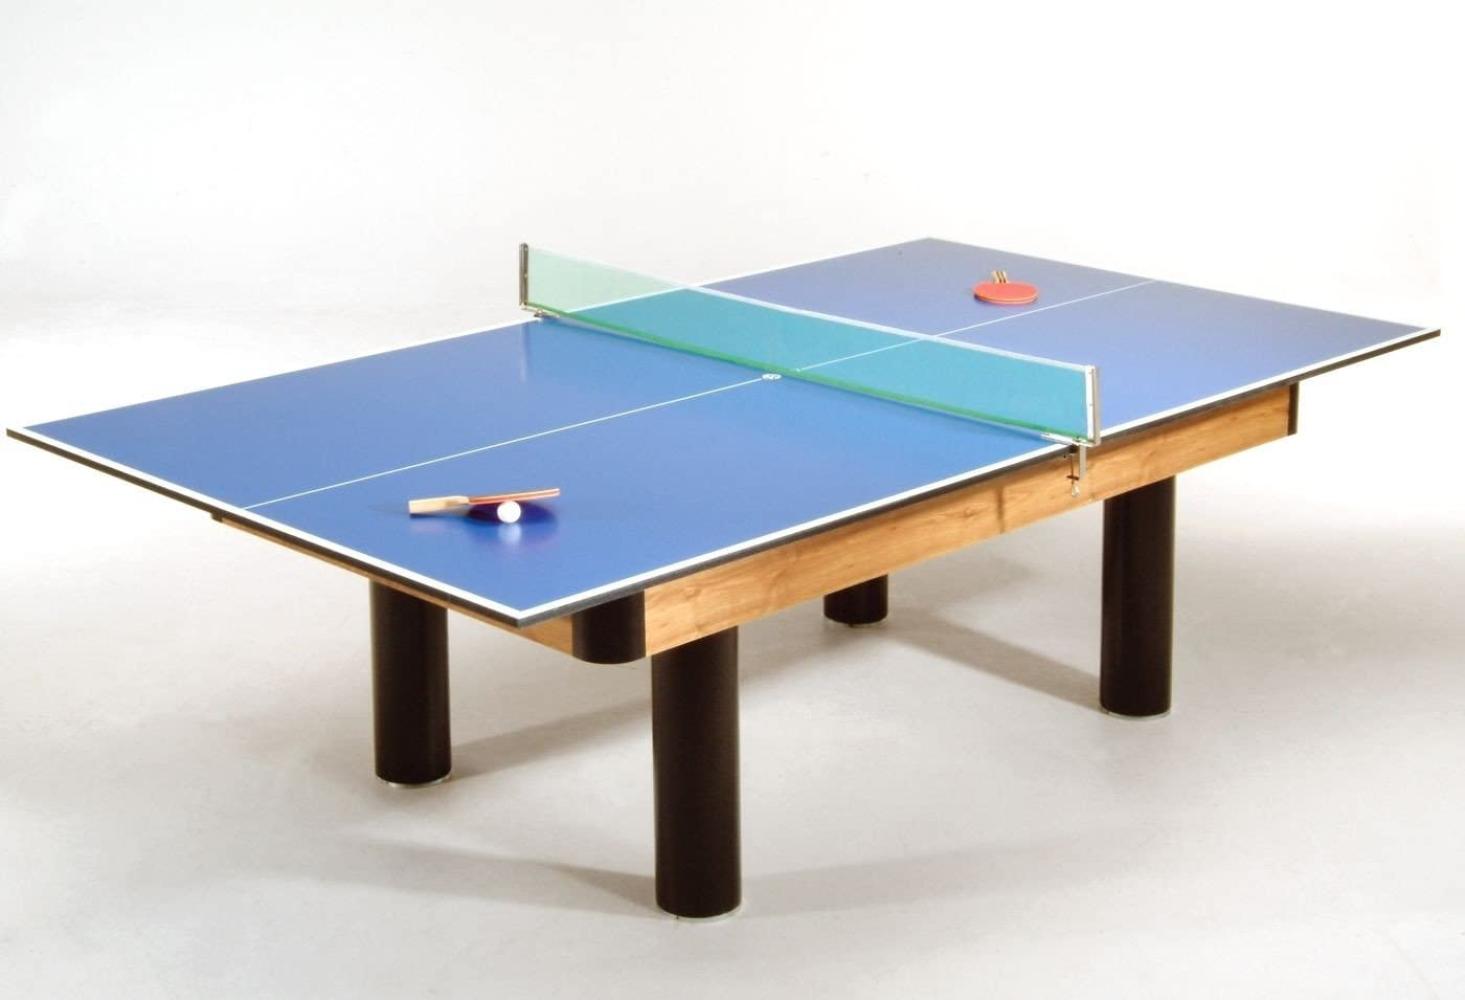 Winsport Tischtennis-Auflage für Billardtisch, blau, 274 x 152 cm Bild 1